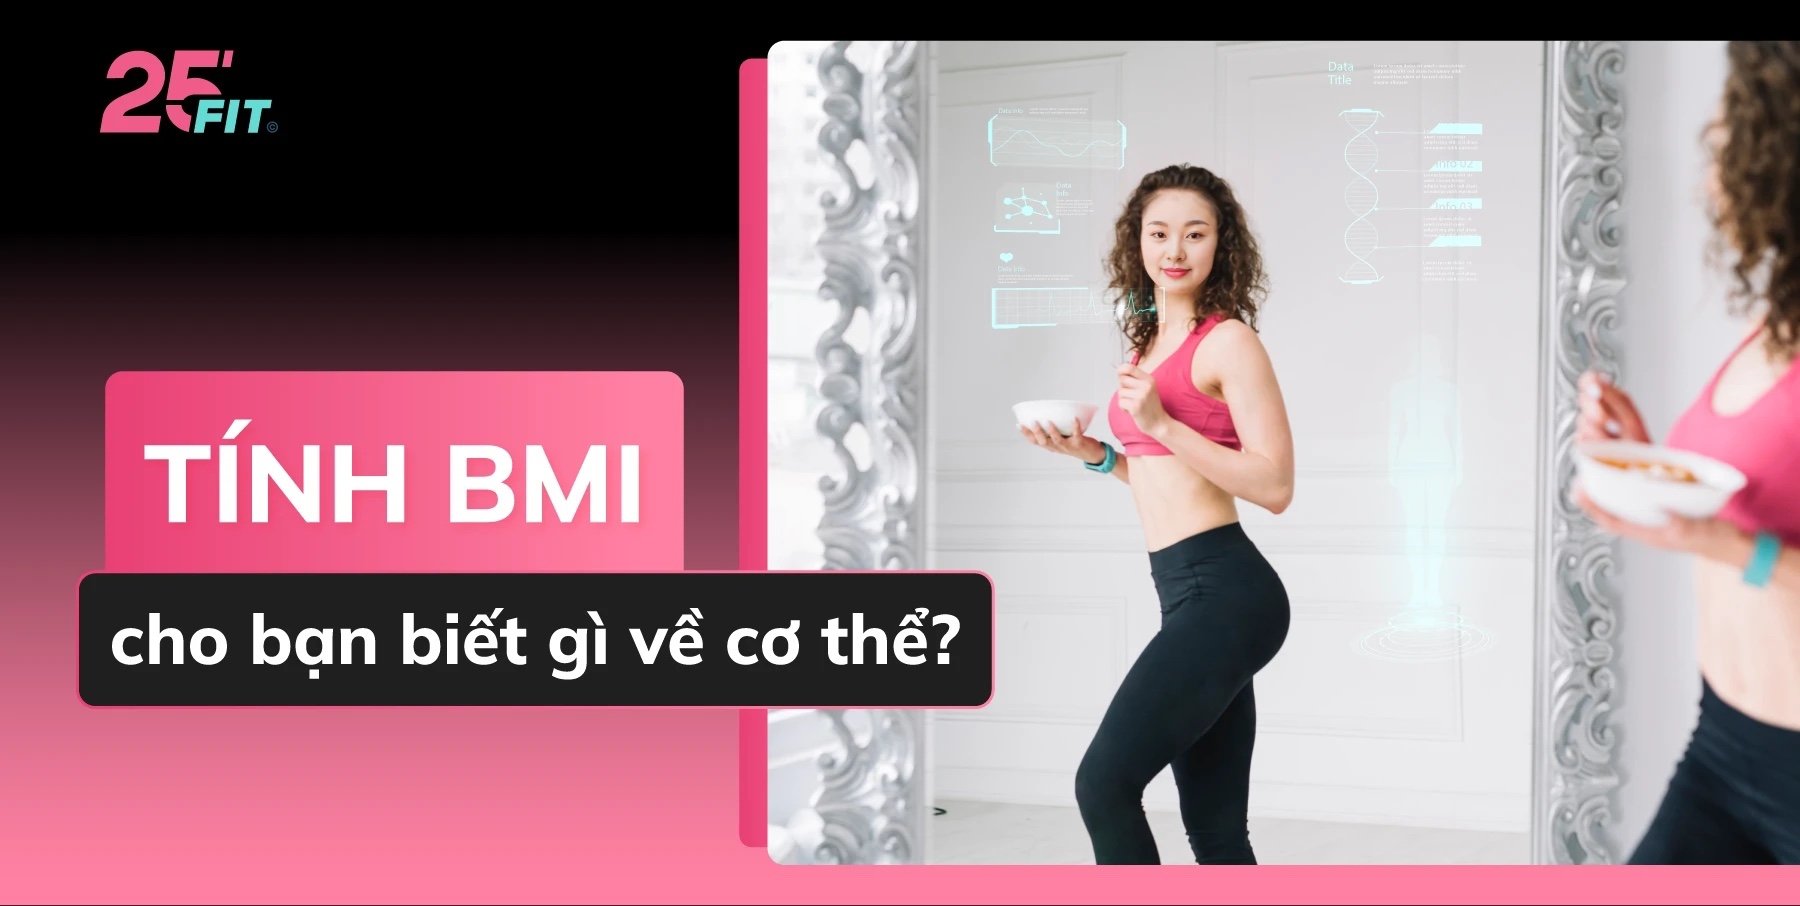 Tính BMI cho bạn biết gì về cơ thể?